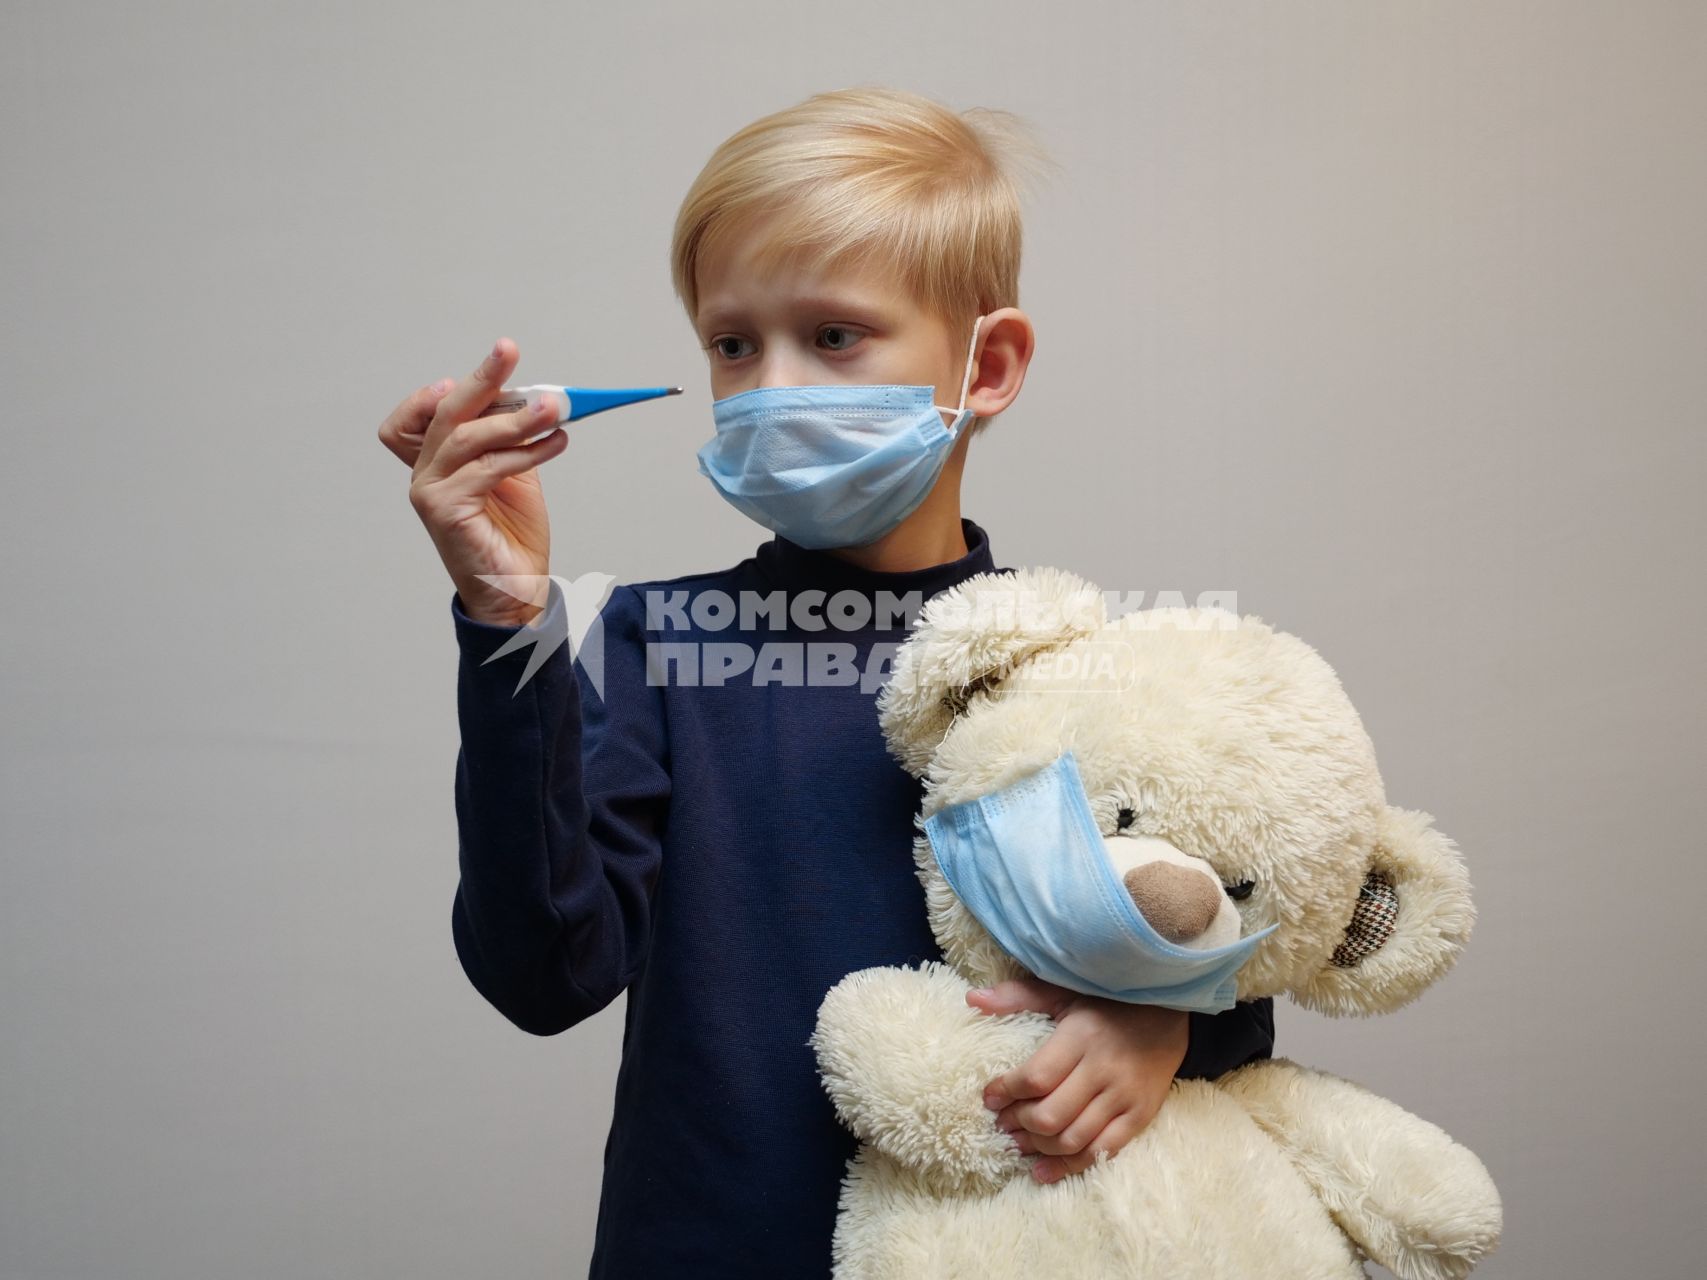 Самара. Мальчик с плюшевым медведем в медицинских масках.